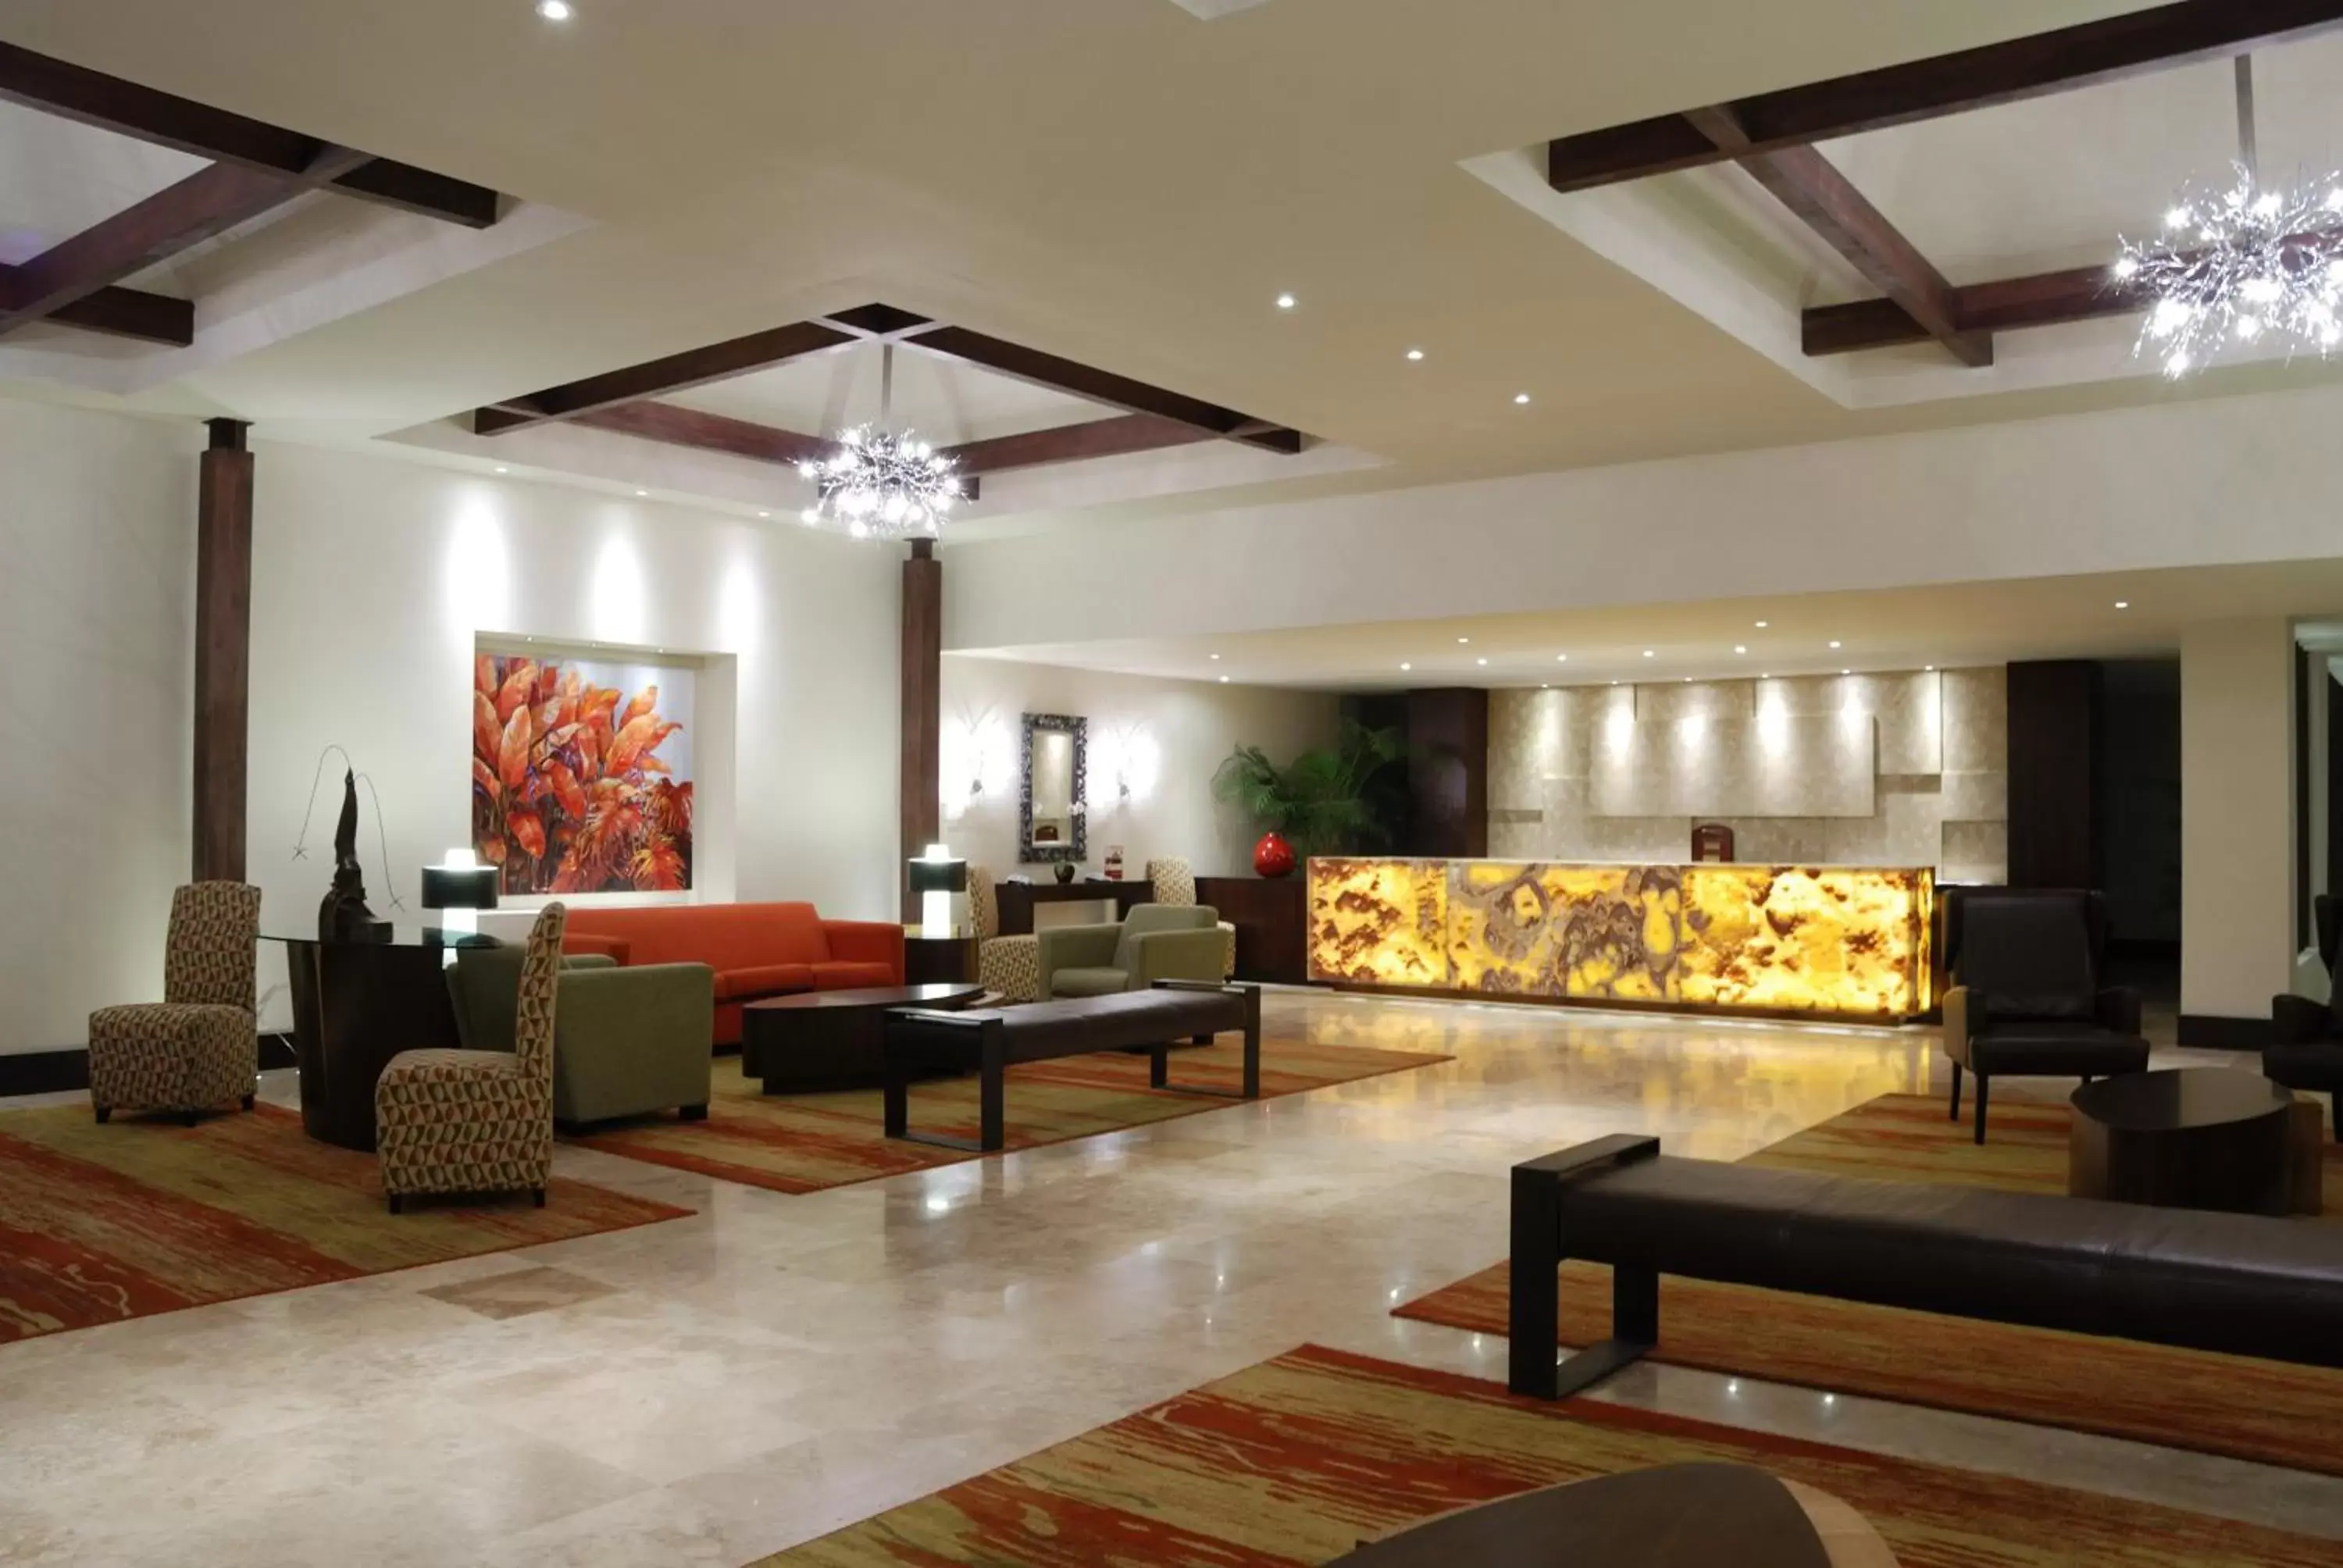 Lobby or reception, Lobby/Reception in Wyndham San Jose Herradura